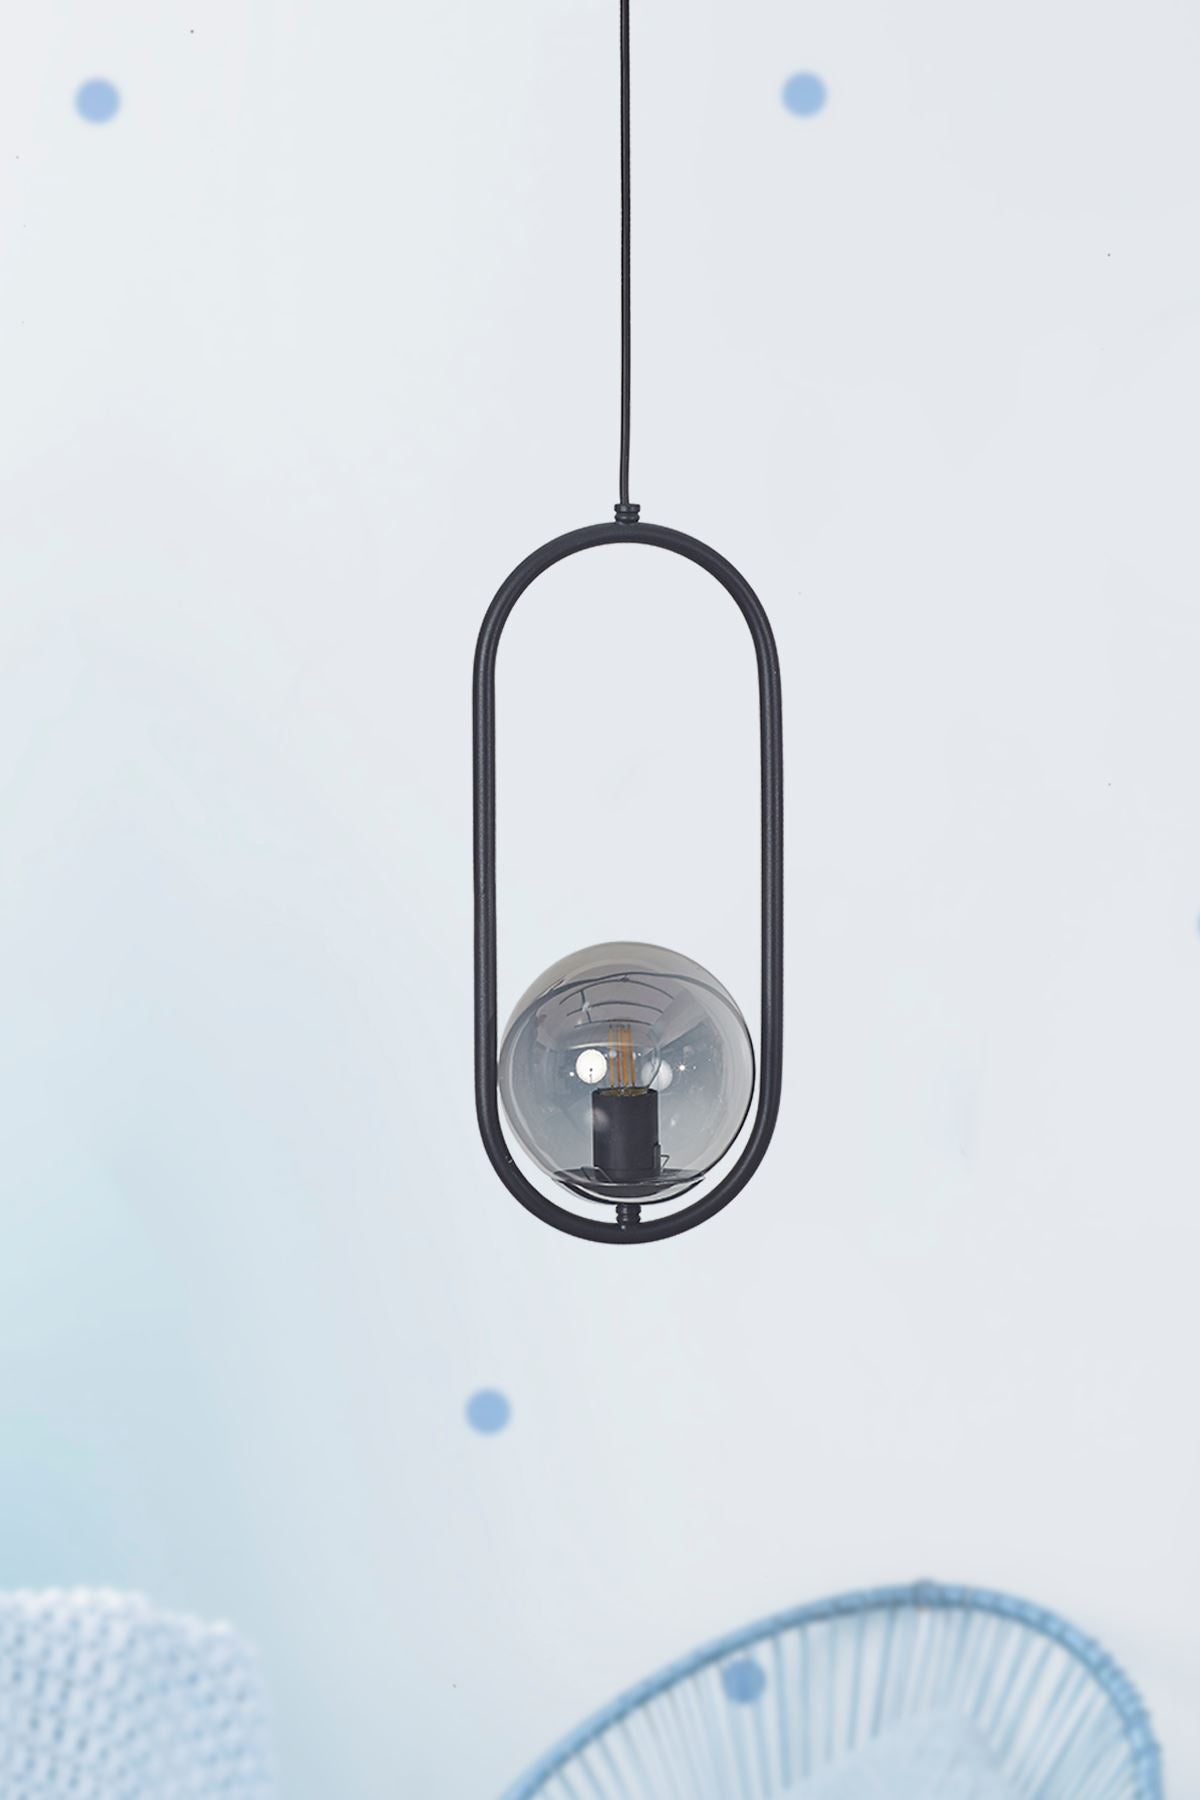 Luzarana Zenga driedelige goud metalen behuizing rookglas design luxe hanglamp